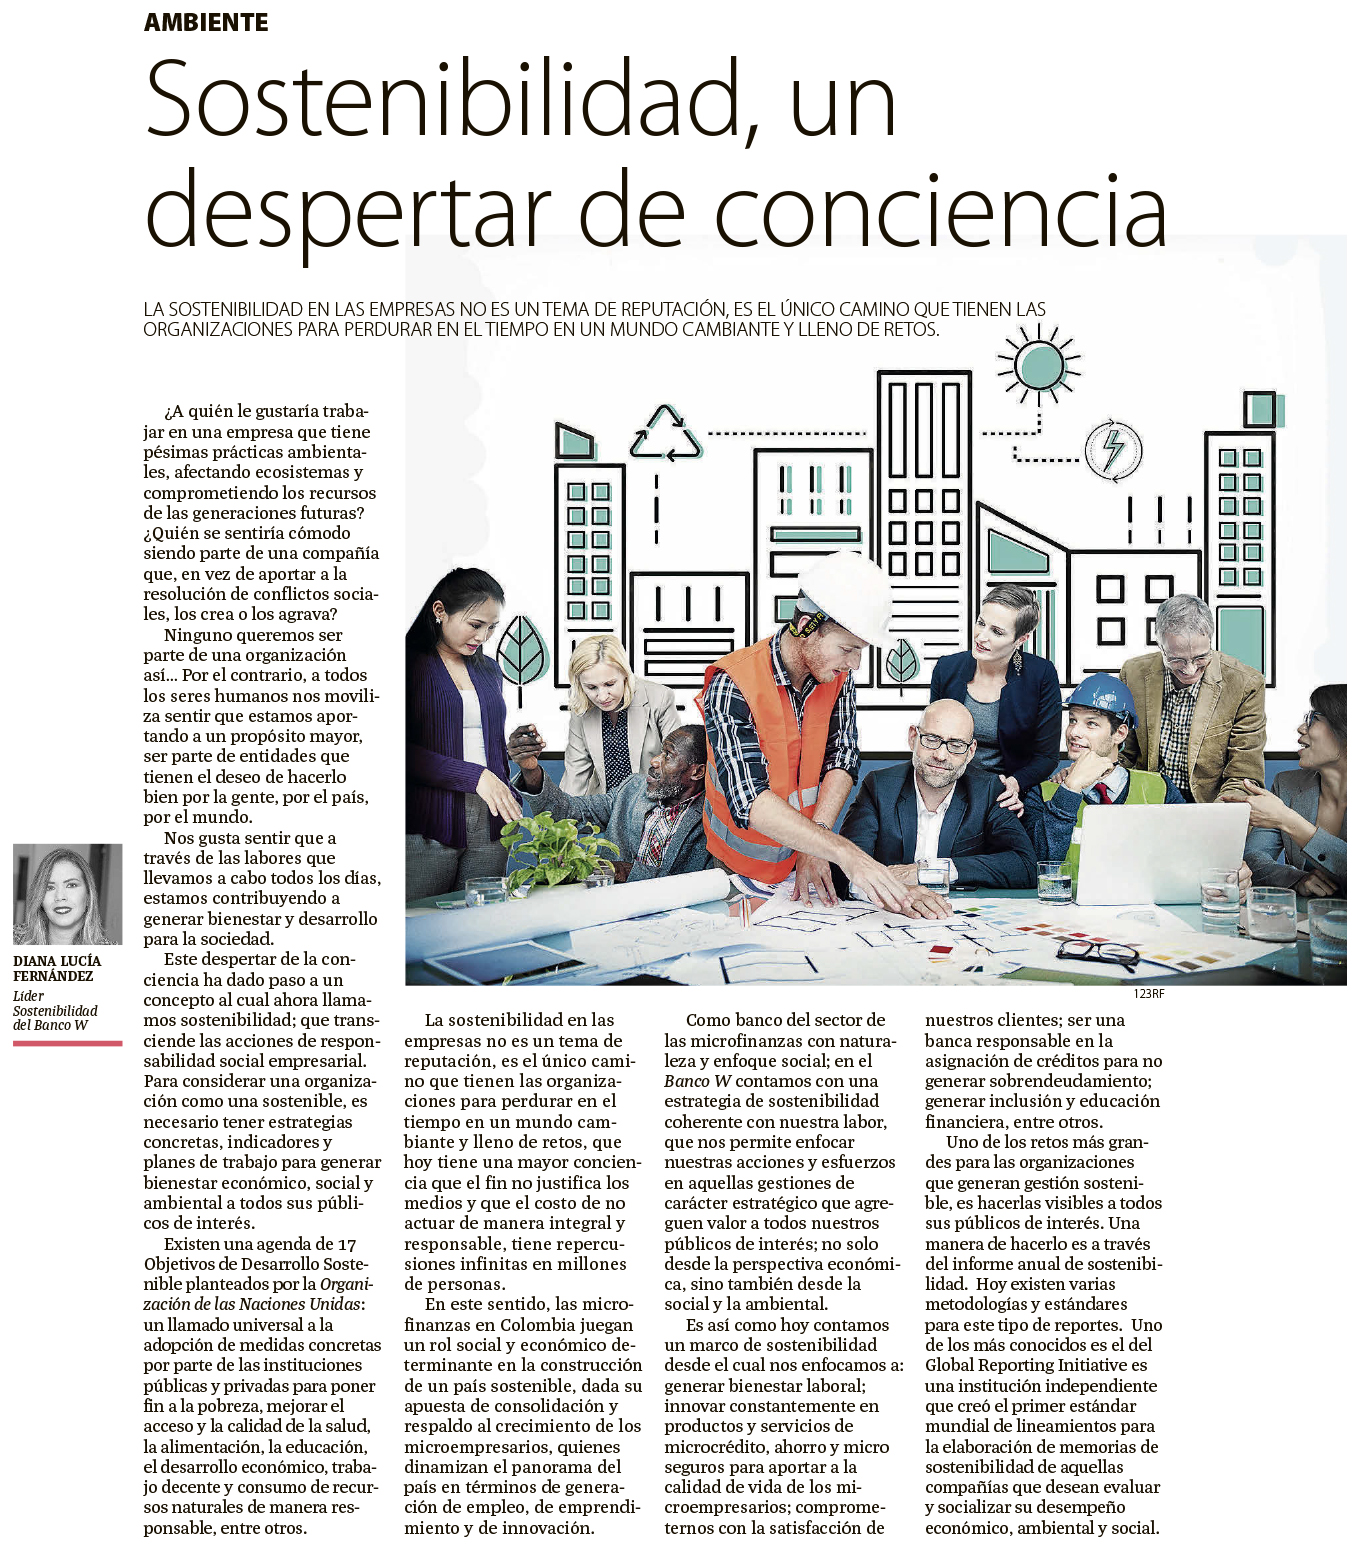 Sostenibilidad, un despertar de conciencia. Columna de opinión escrita por Diana Lucía Fernández, Jefe de Comunicaciones del Banco W.